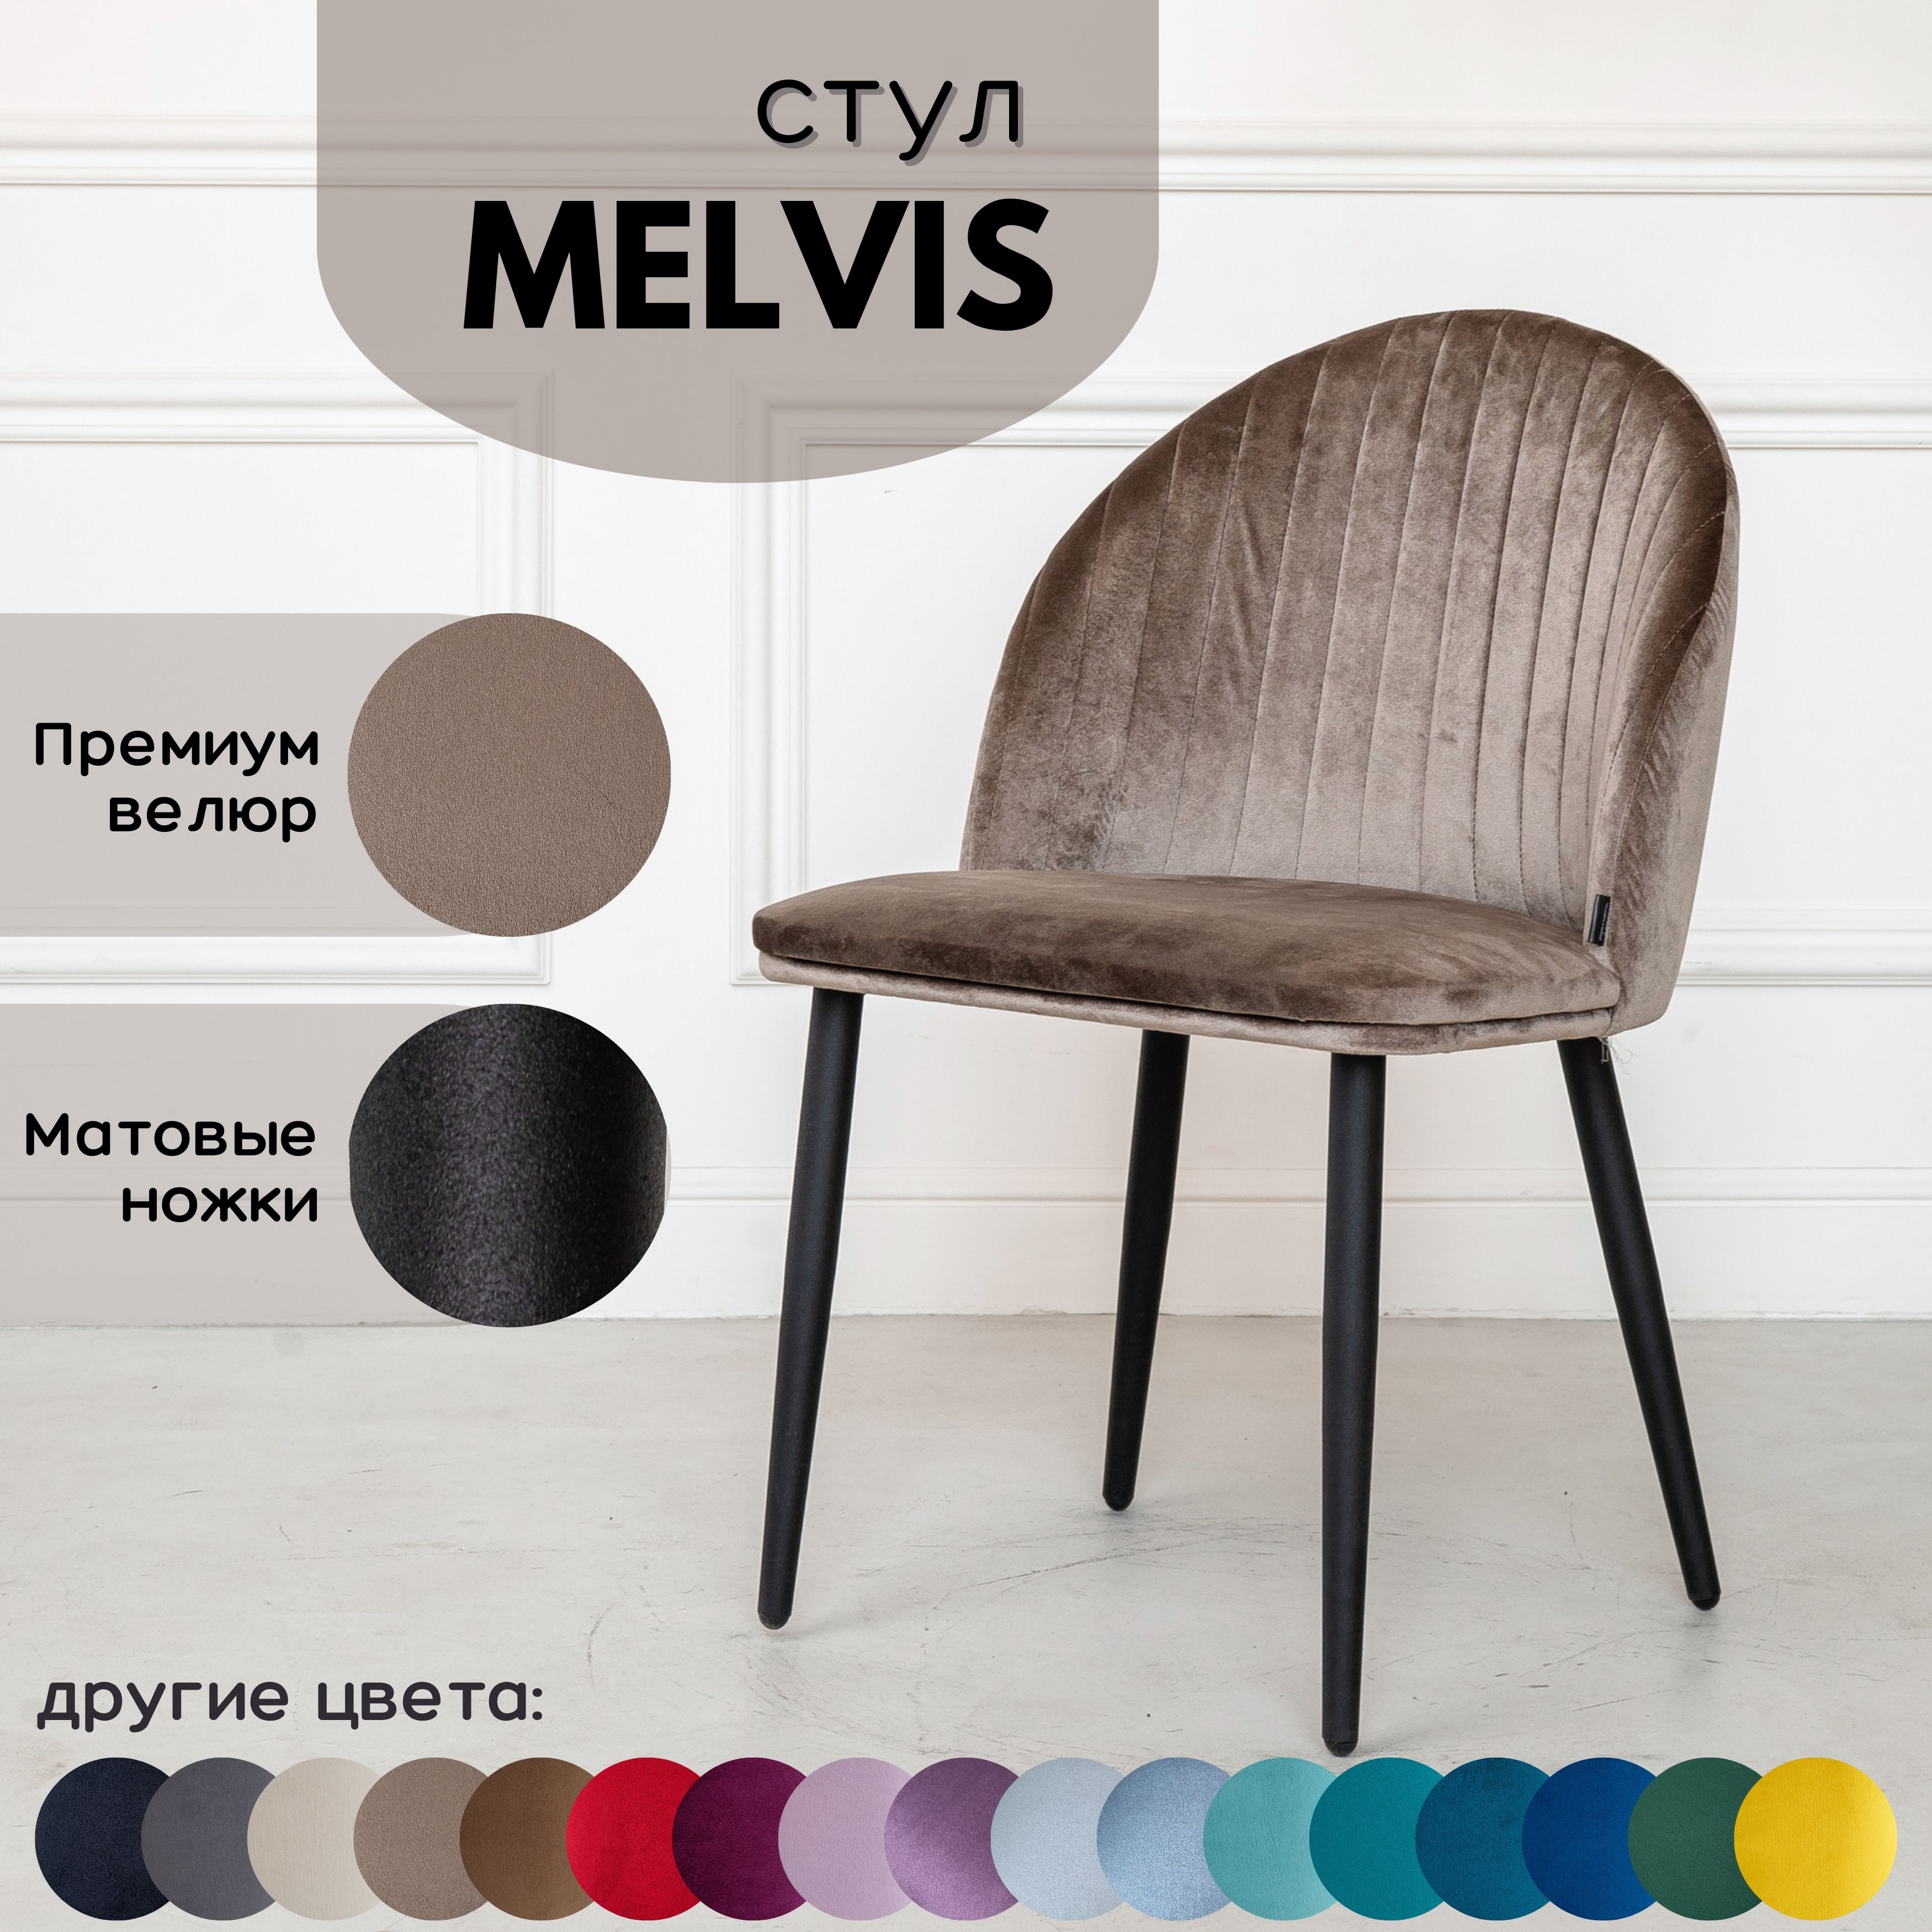 Мягкий стул Stuler Сhairs Melvis 1 шт Светло-коричневый с черными матовыми ножками